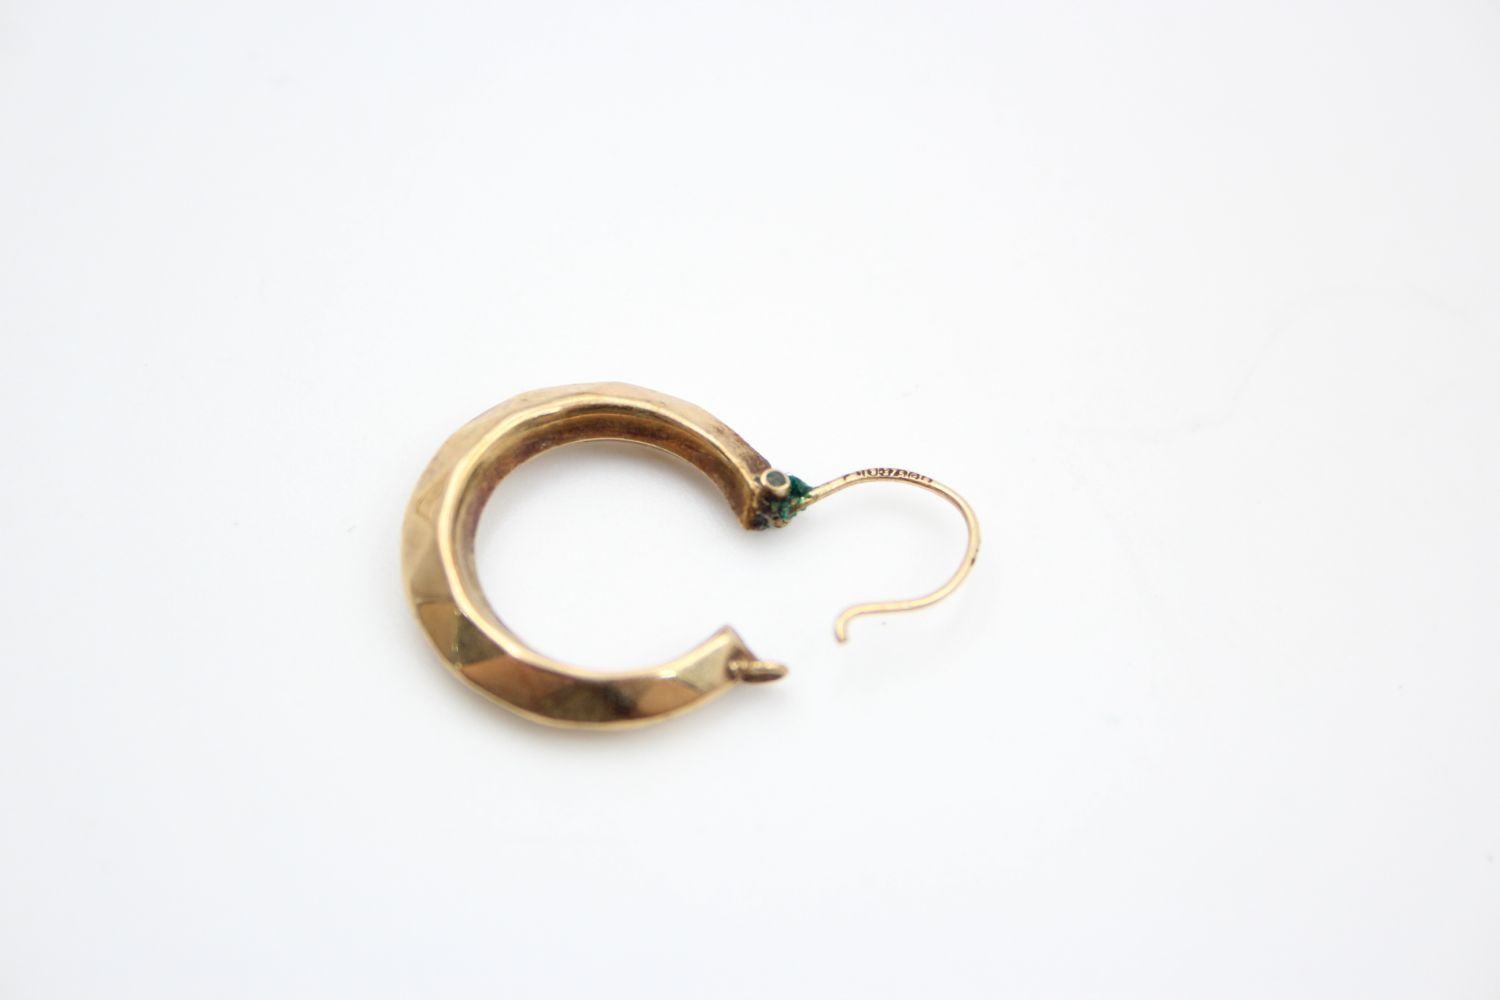 2 x 9ct gold hoop earrings 2.5 grams gross - Image 5 of 9